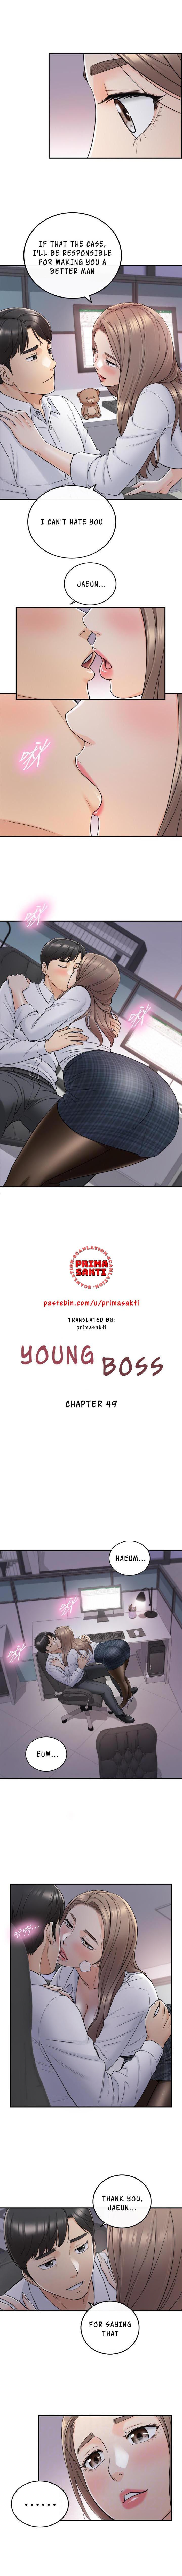 Young Boss Manhwa 01-73 386